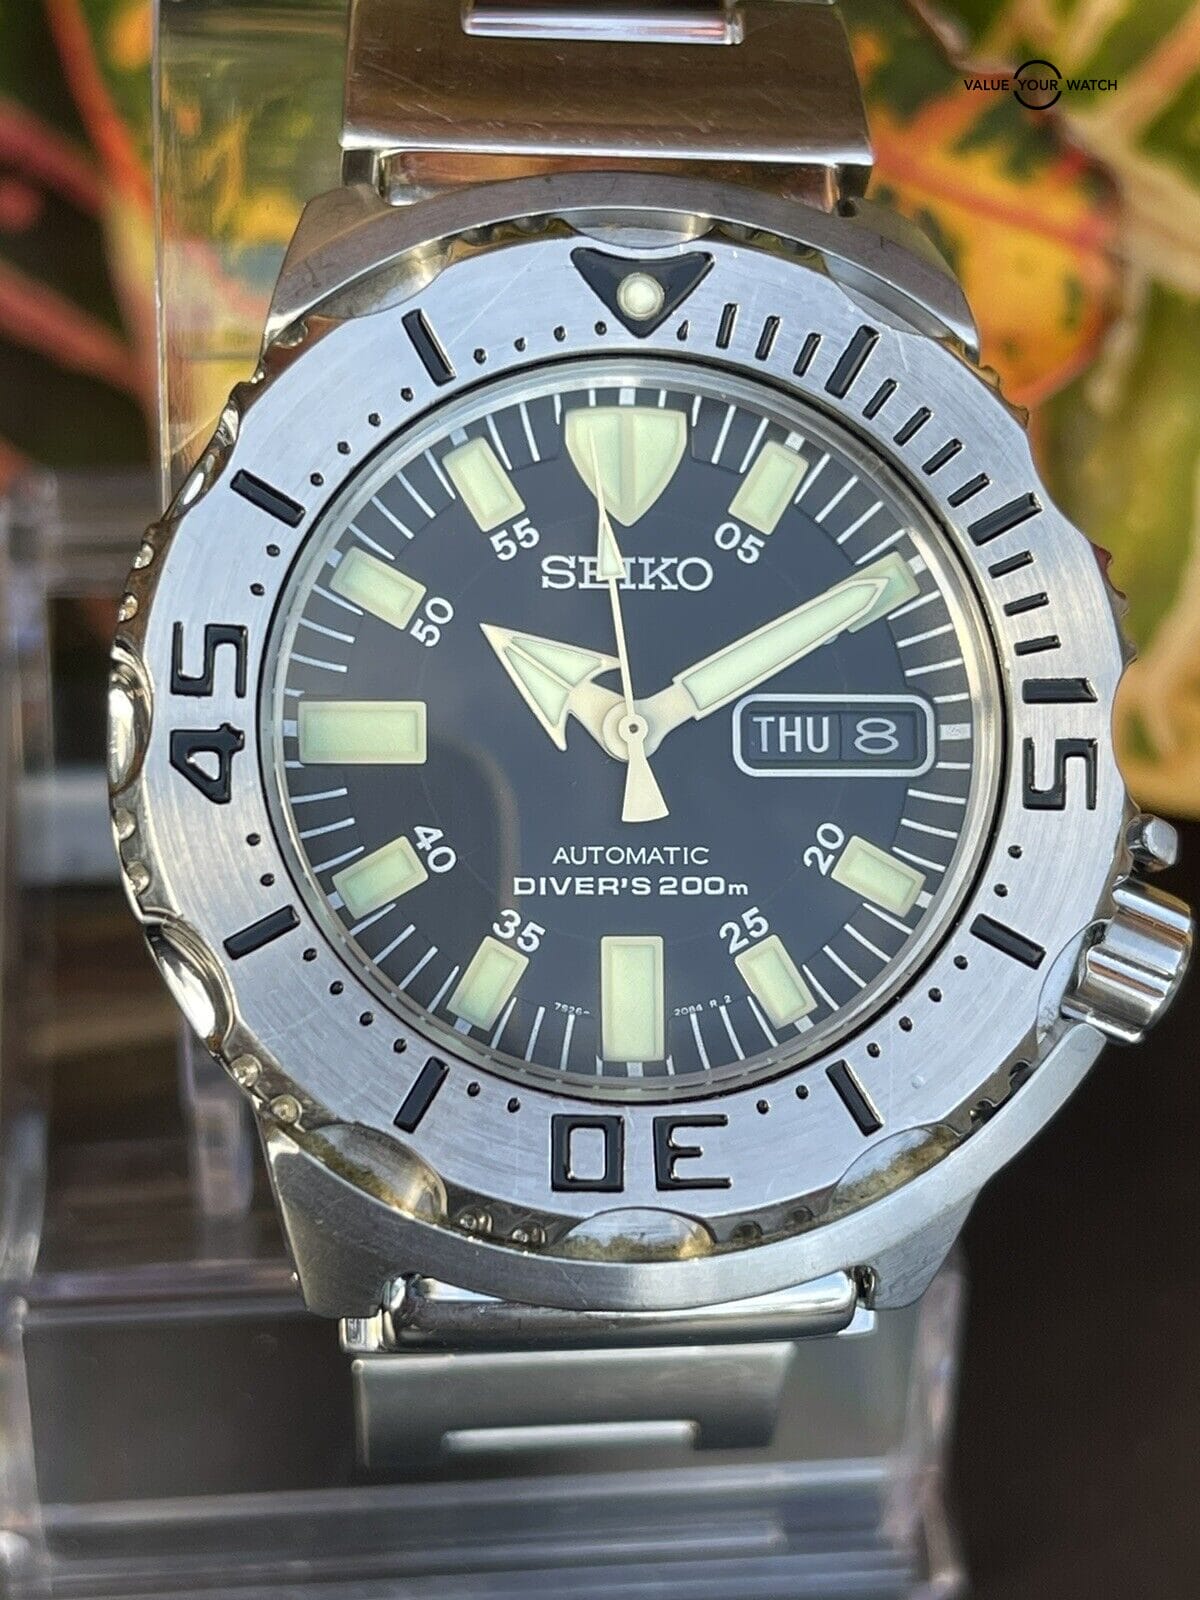 SEIKO 7S26-0350 Gen 1 Black Monster Diver's Dive Watch Bracelet Value Your Watch